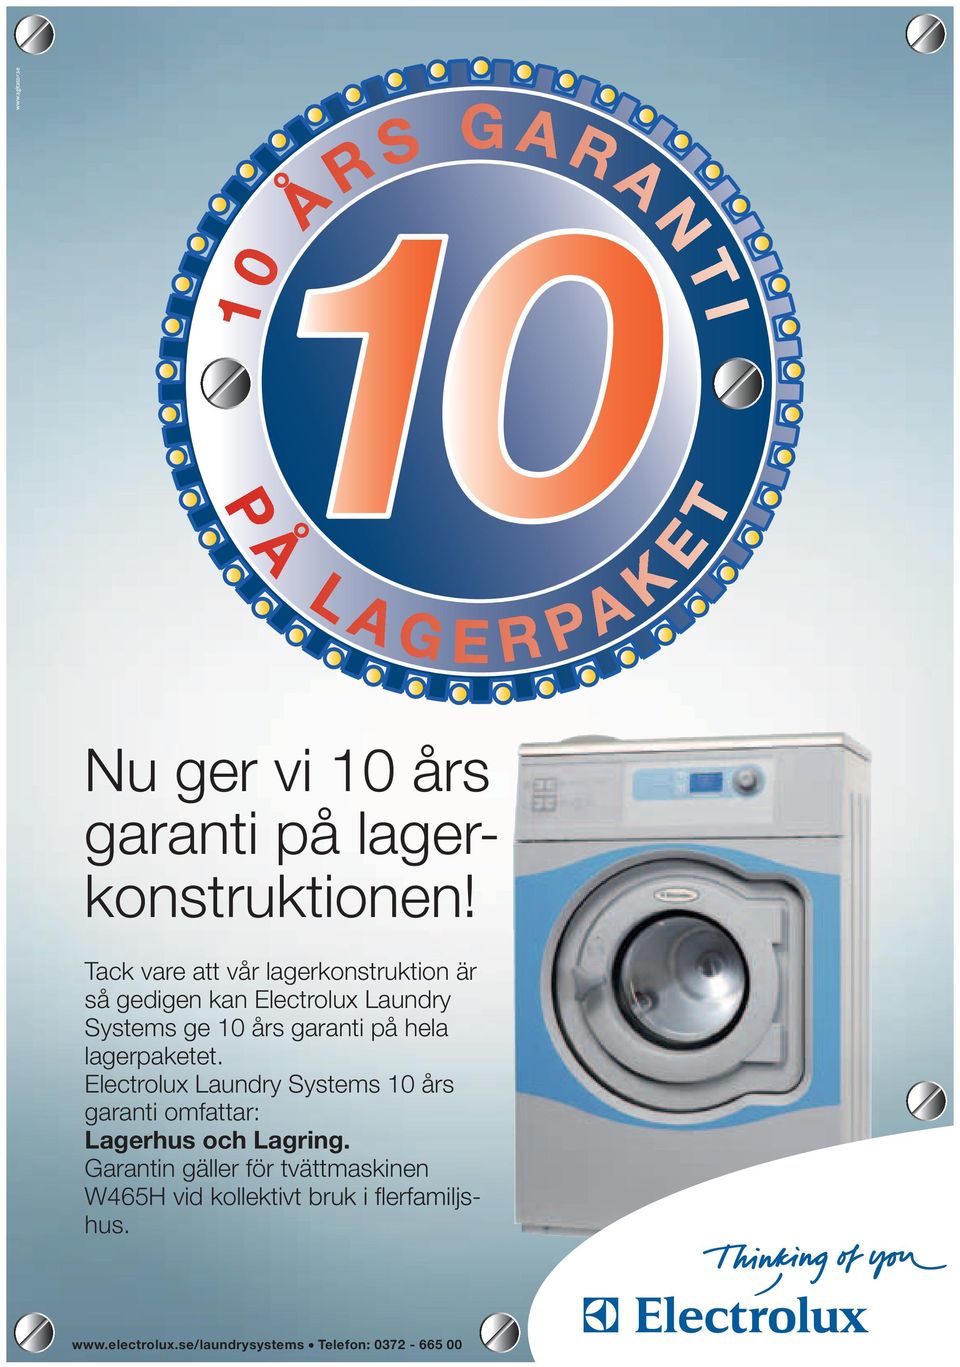 på hela lagerpaketet. Electrolux Laundry Systems 10 års garanti omfattar: Lagerhus och Lagring.